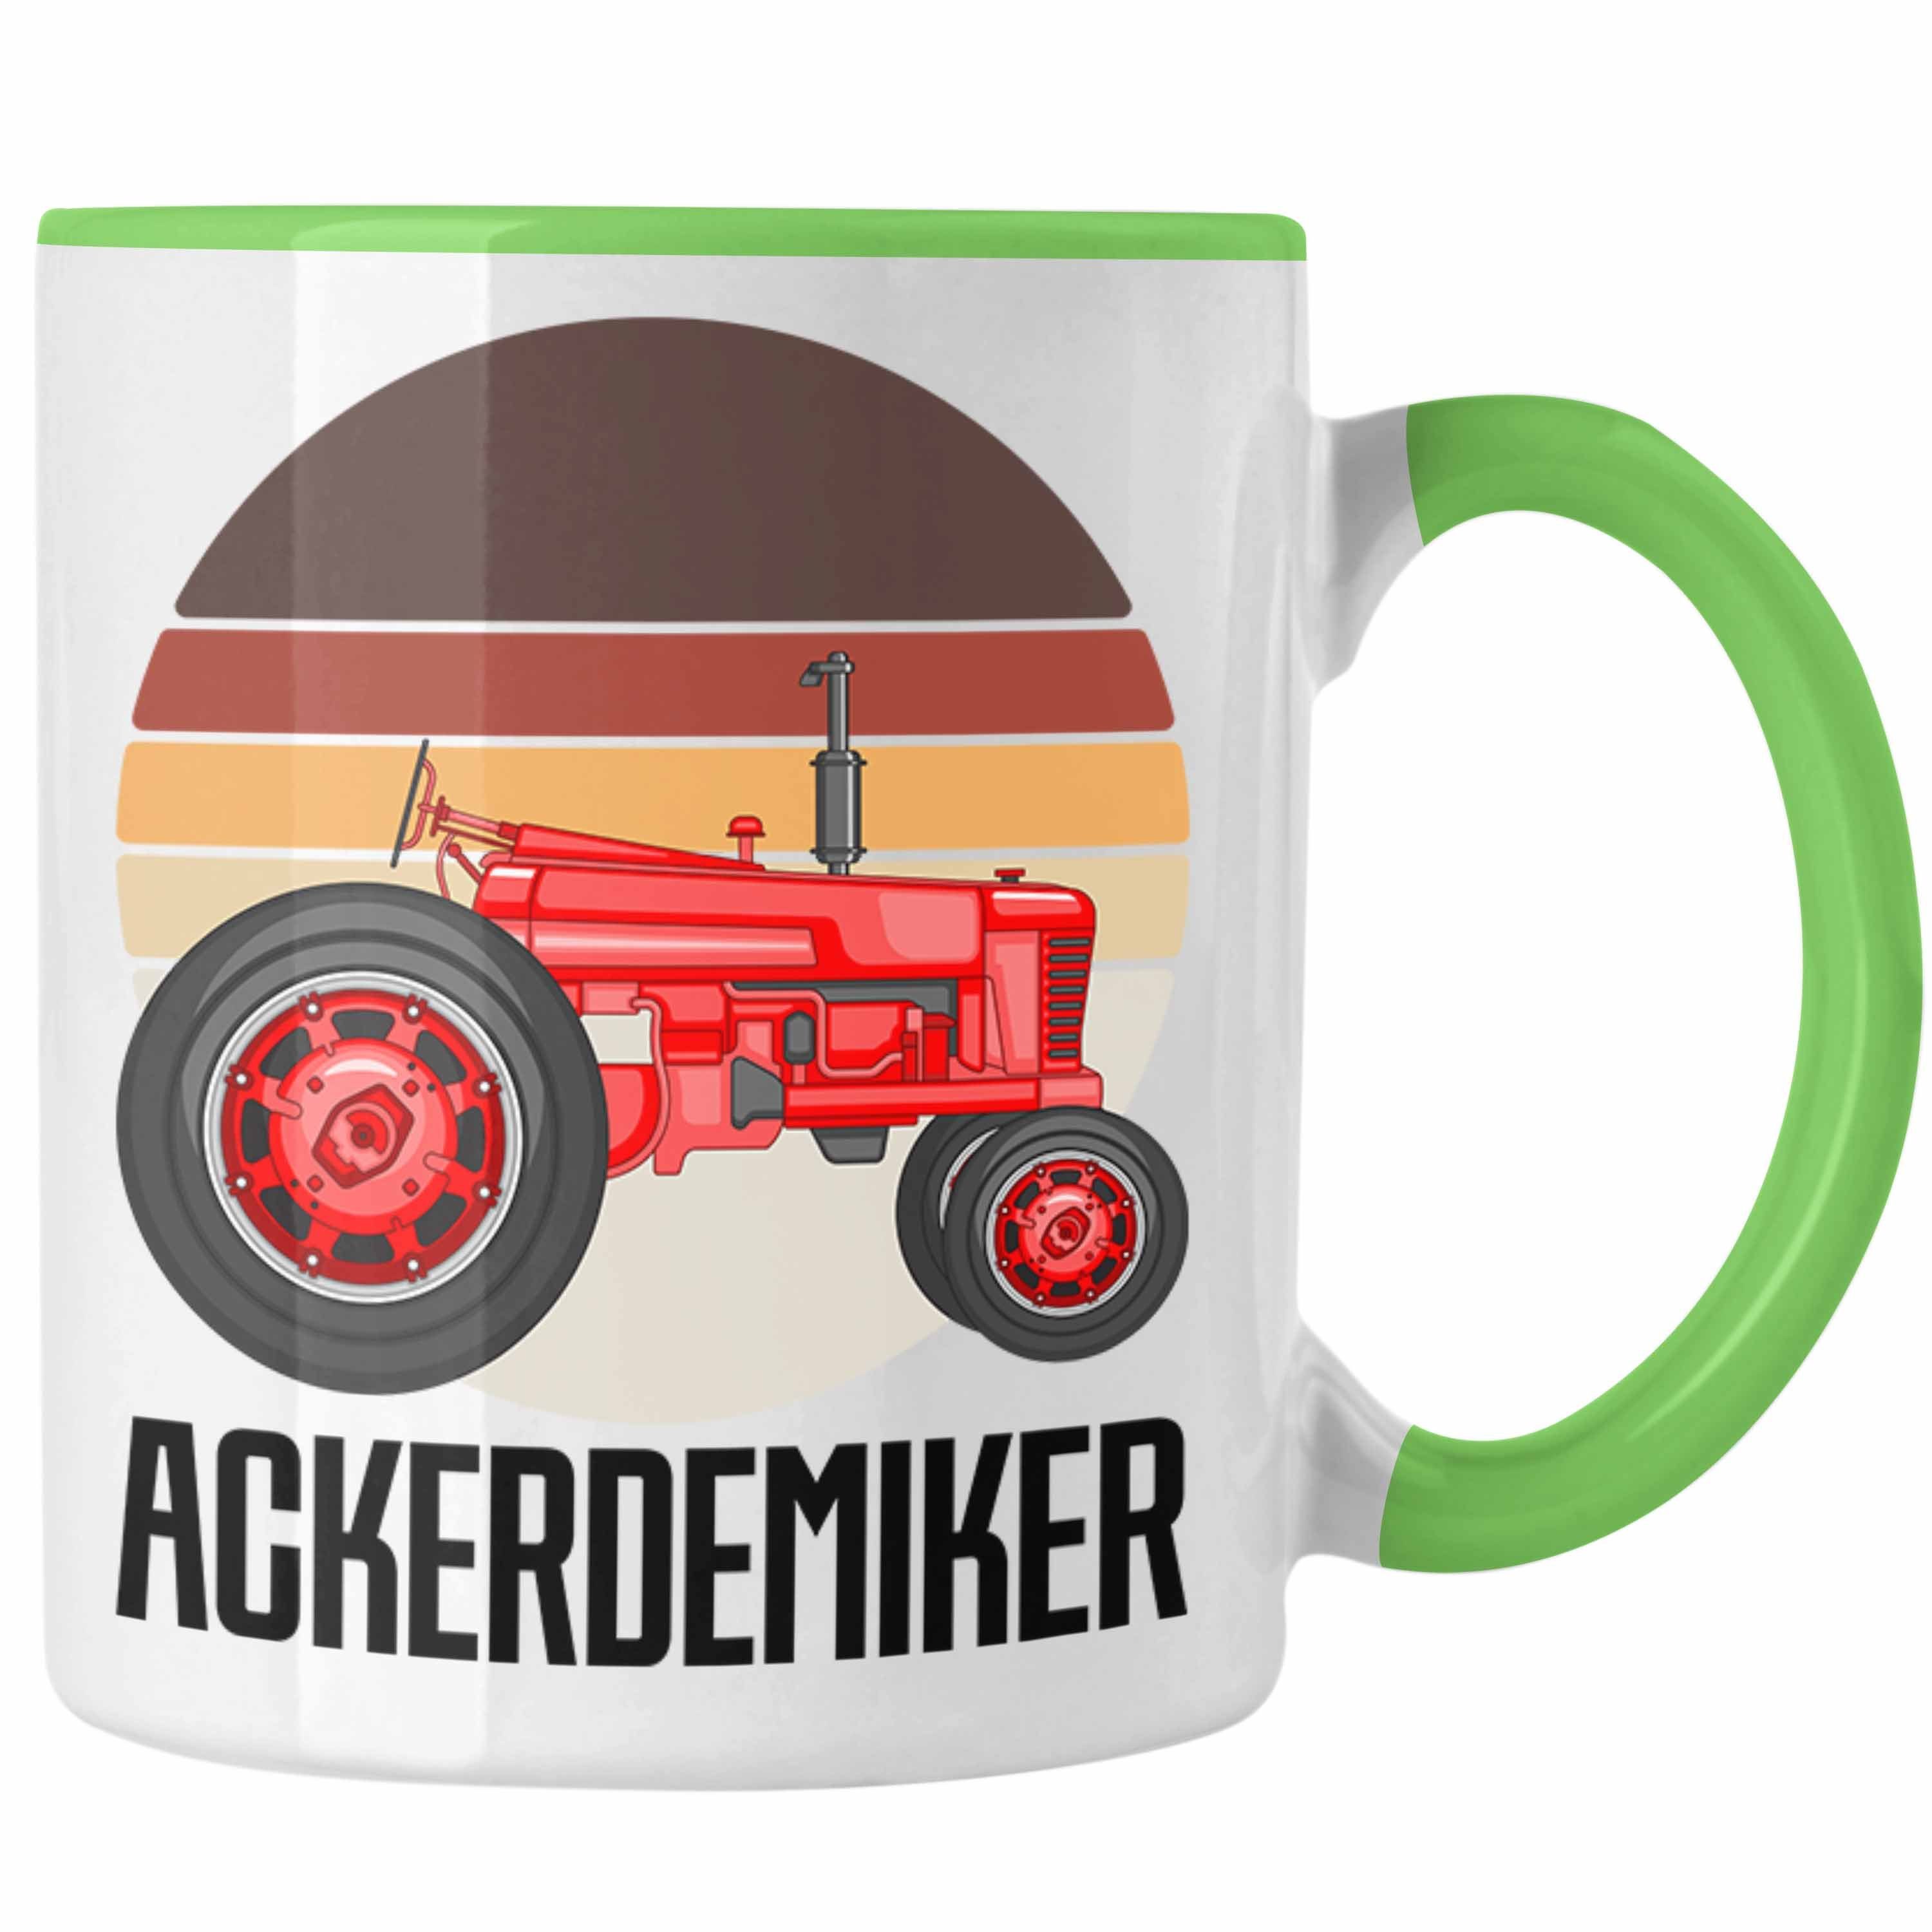 Trendation Tasse Ackerdemiker Tasse Geschenk für Landwirt Kaffee-Becher Geschenkidee Ba Grün